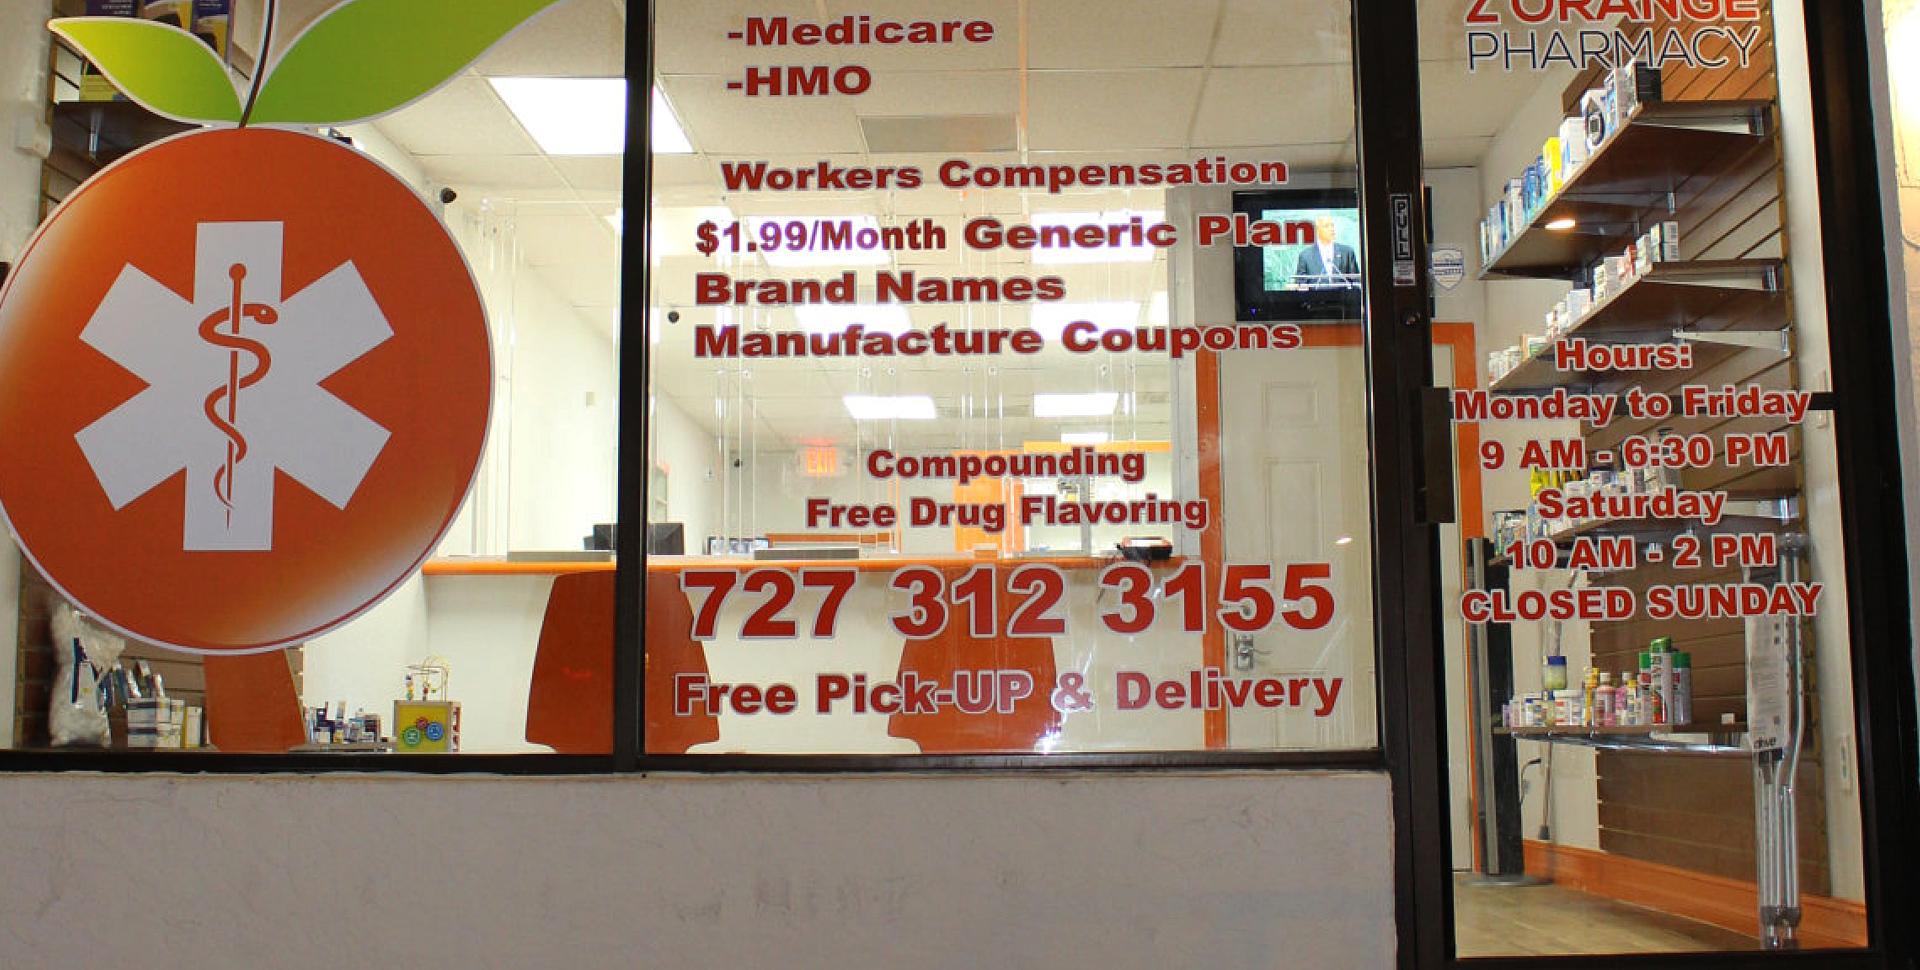 Z Orange Pharmacy Office